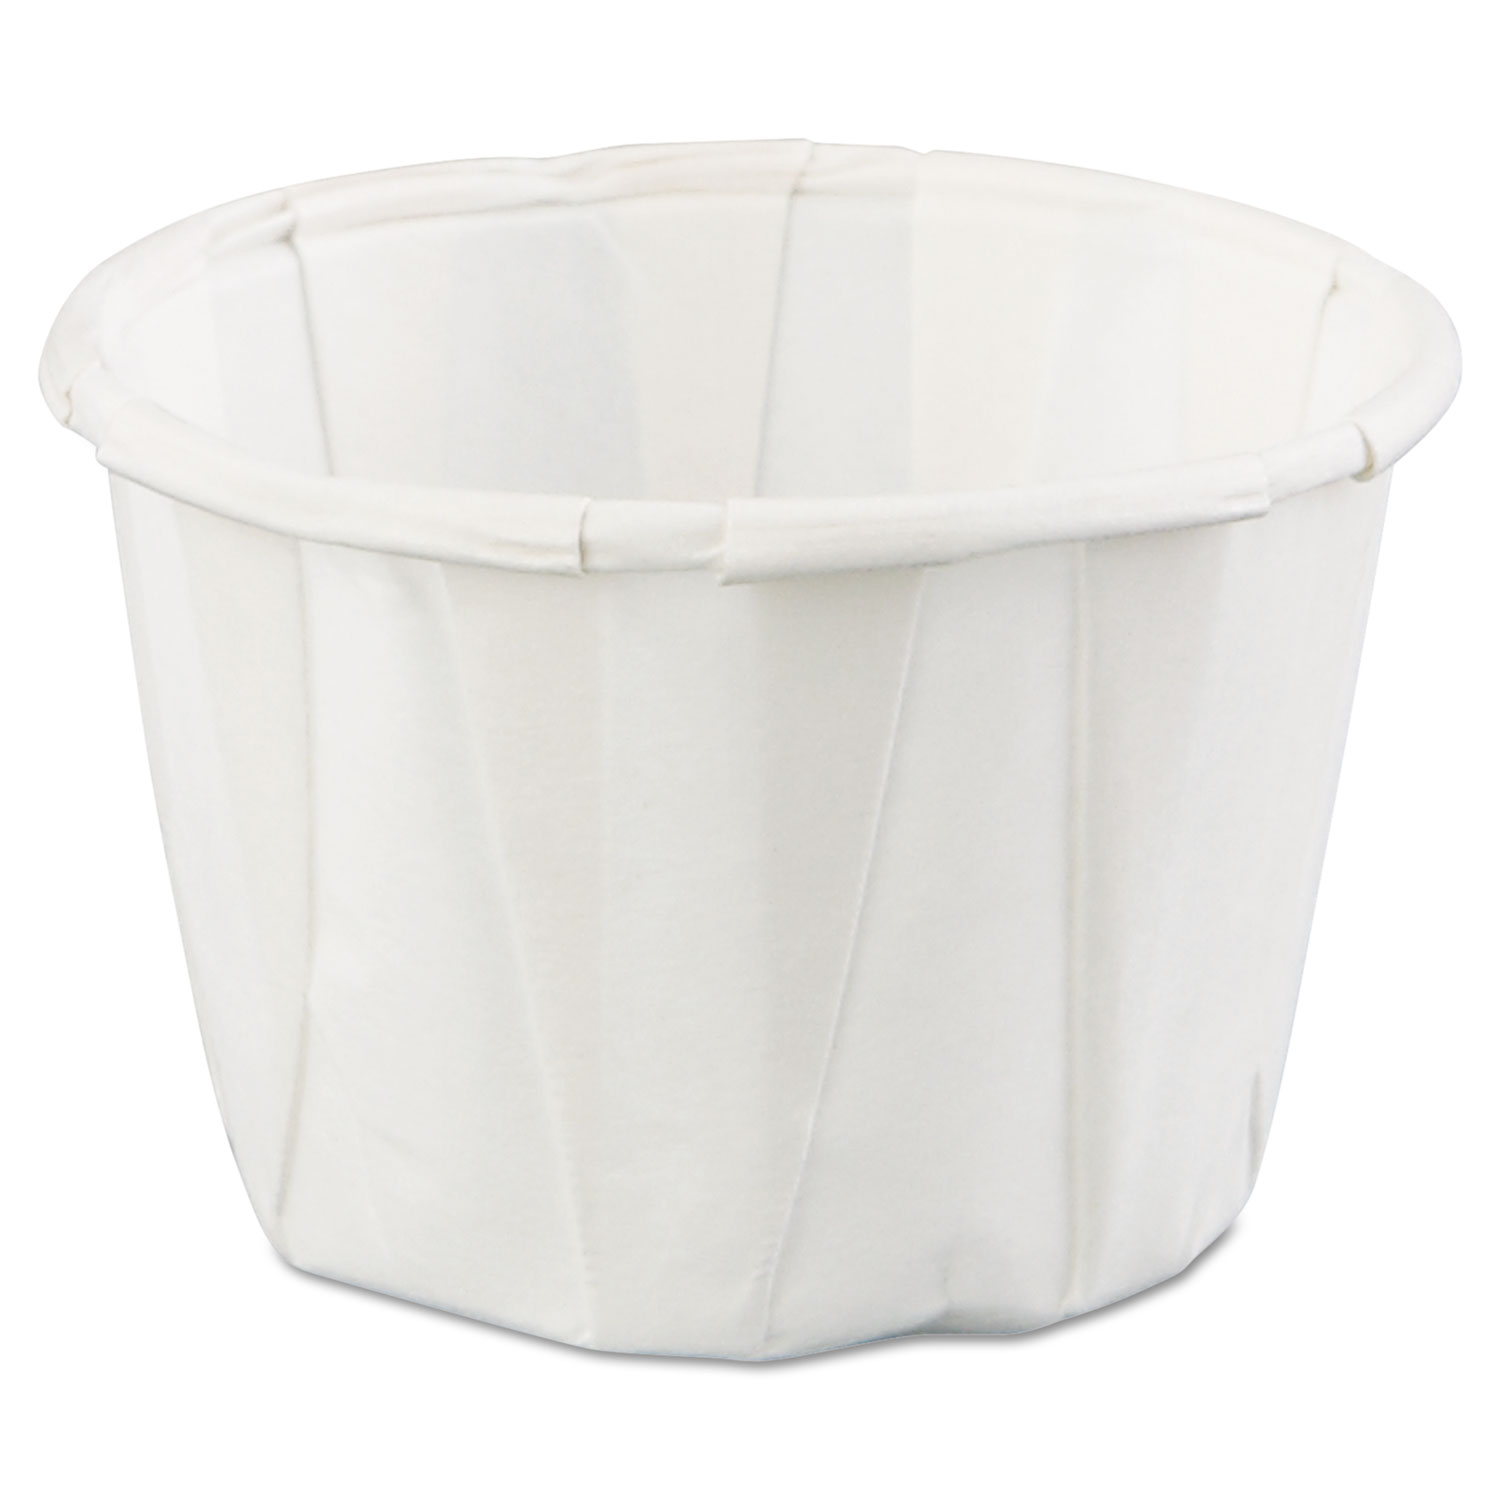  Genpak F100--- Squat Paper Portion Cup, 1oz, White, 250/Bag, 20 Bags/Carton (GNPF100) 